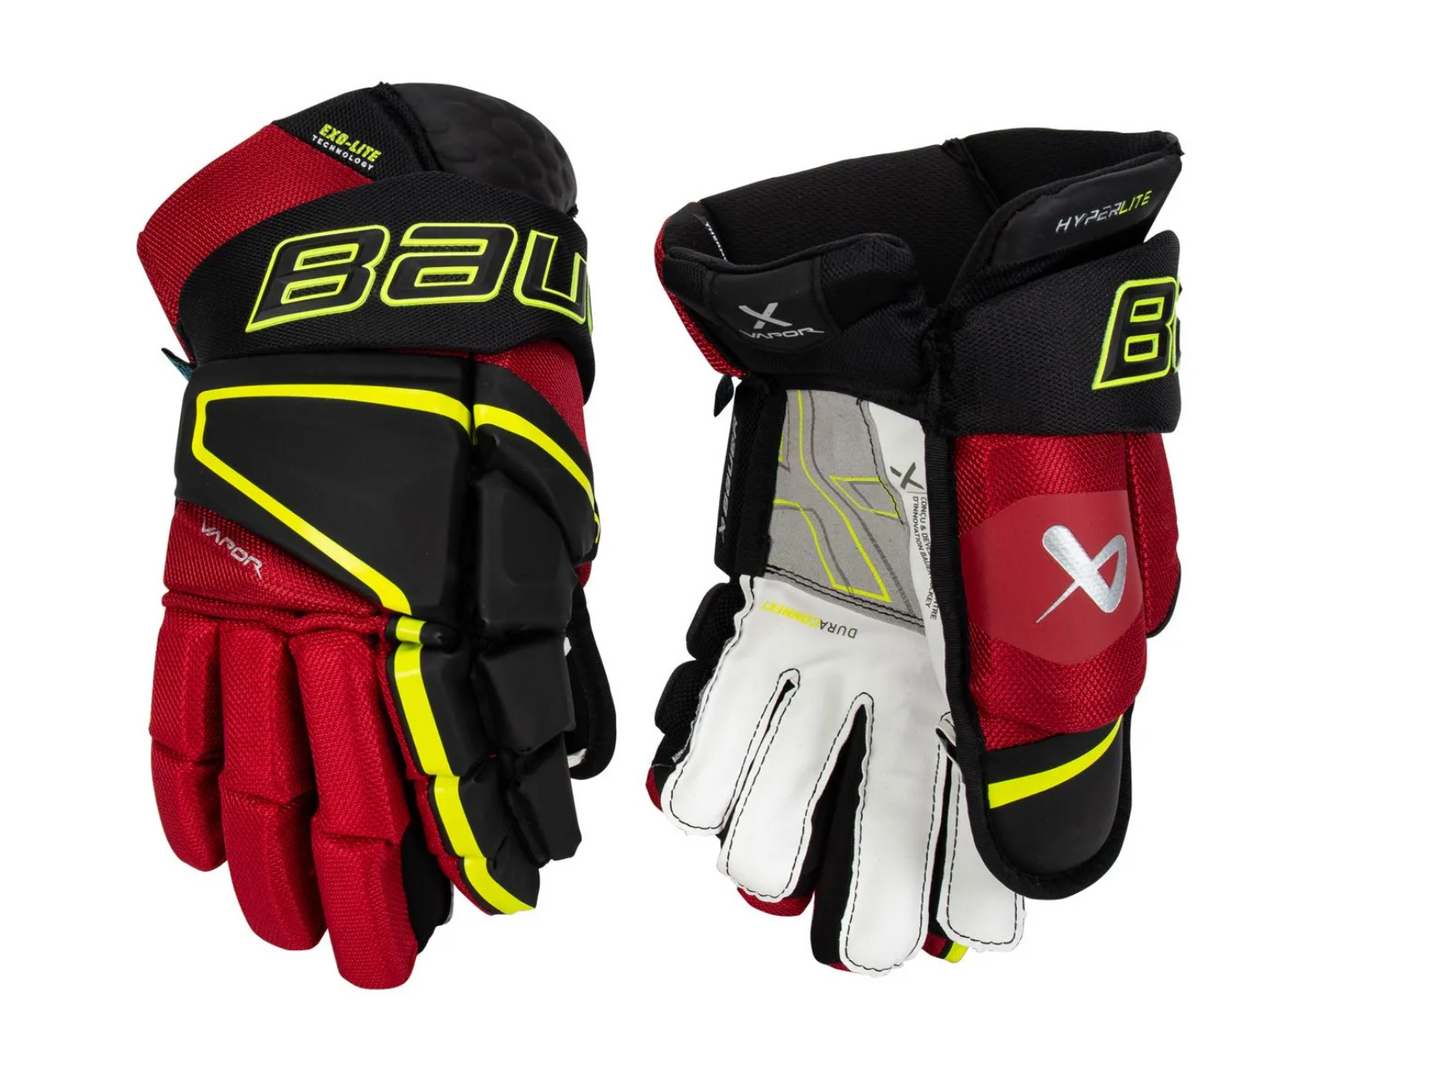 Bauer Vapor HyperLite Hockey Gloves - Junior